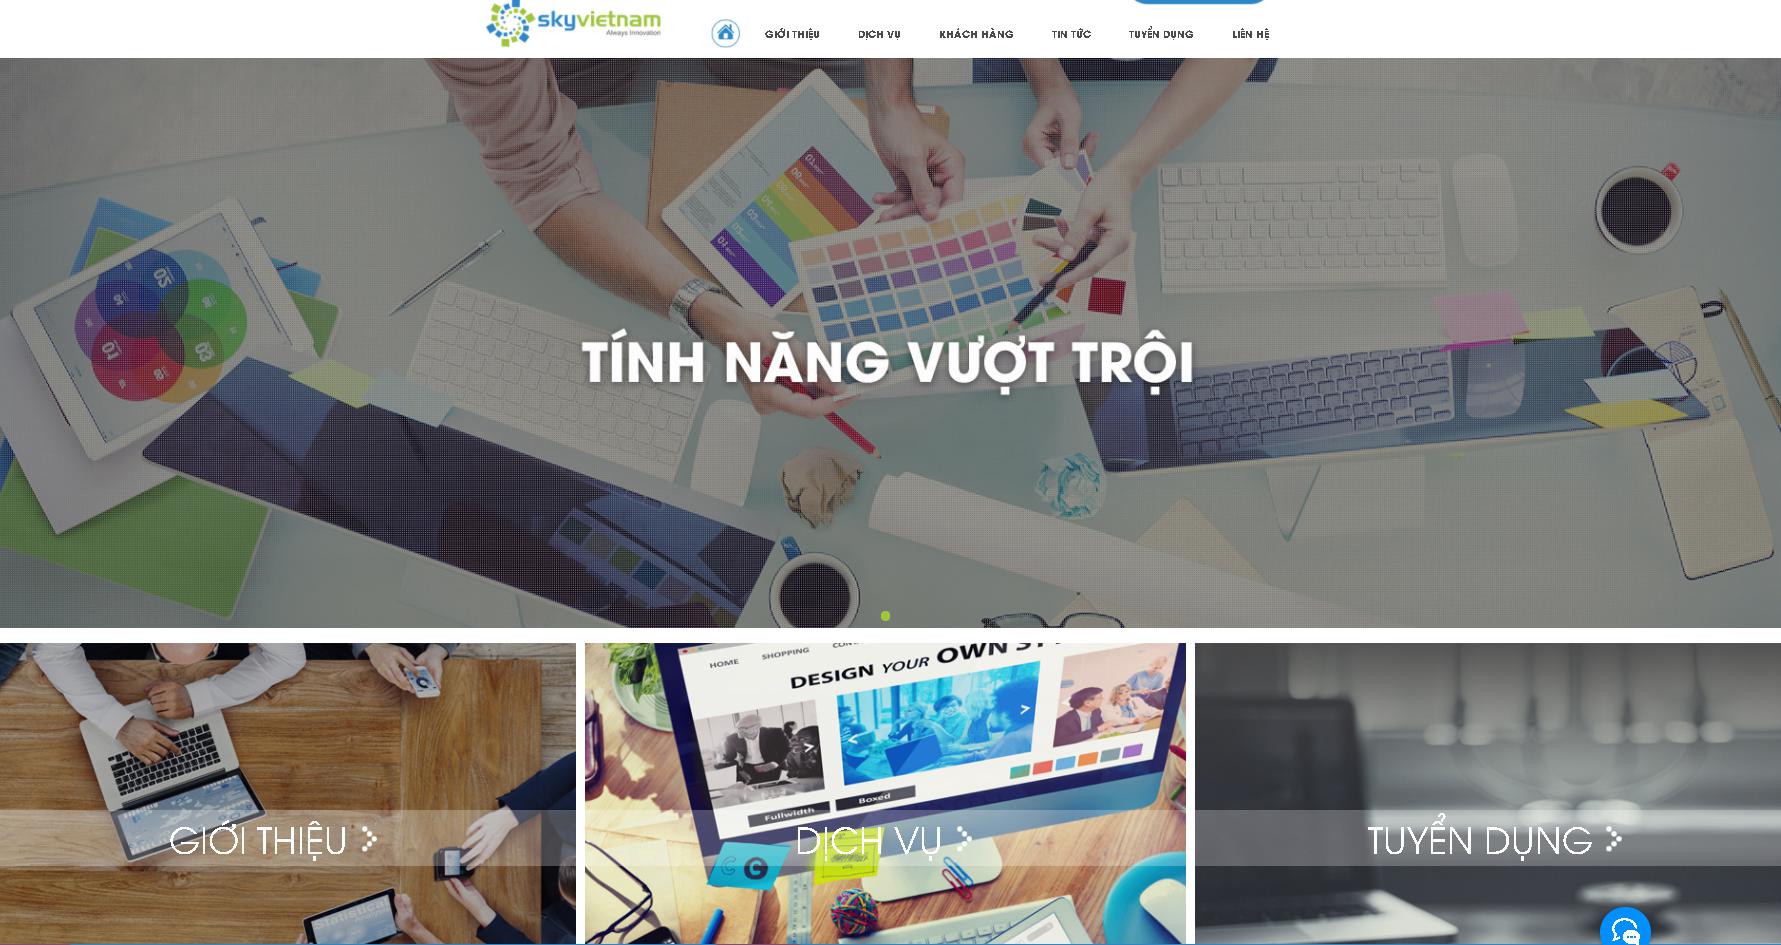 Công ty cổ phần công nghệ Sky Việt Nam